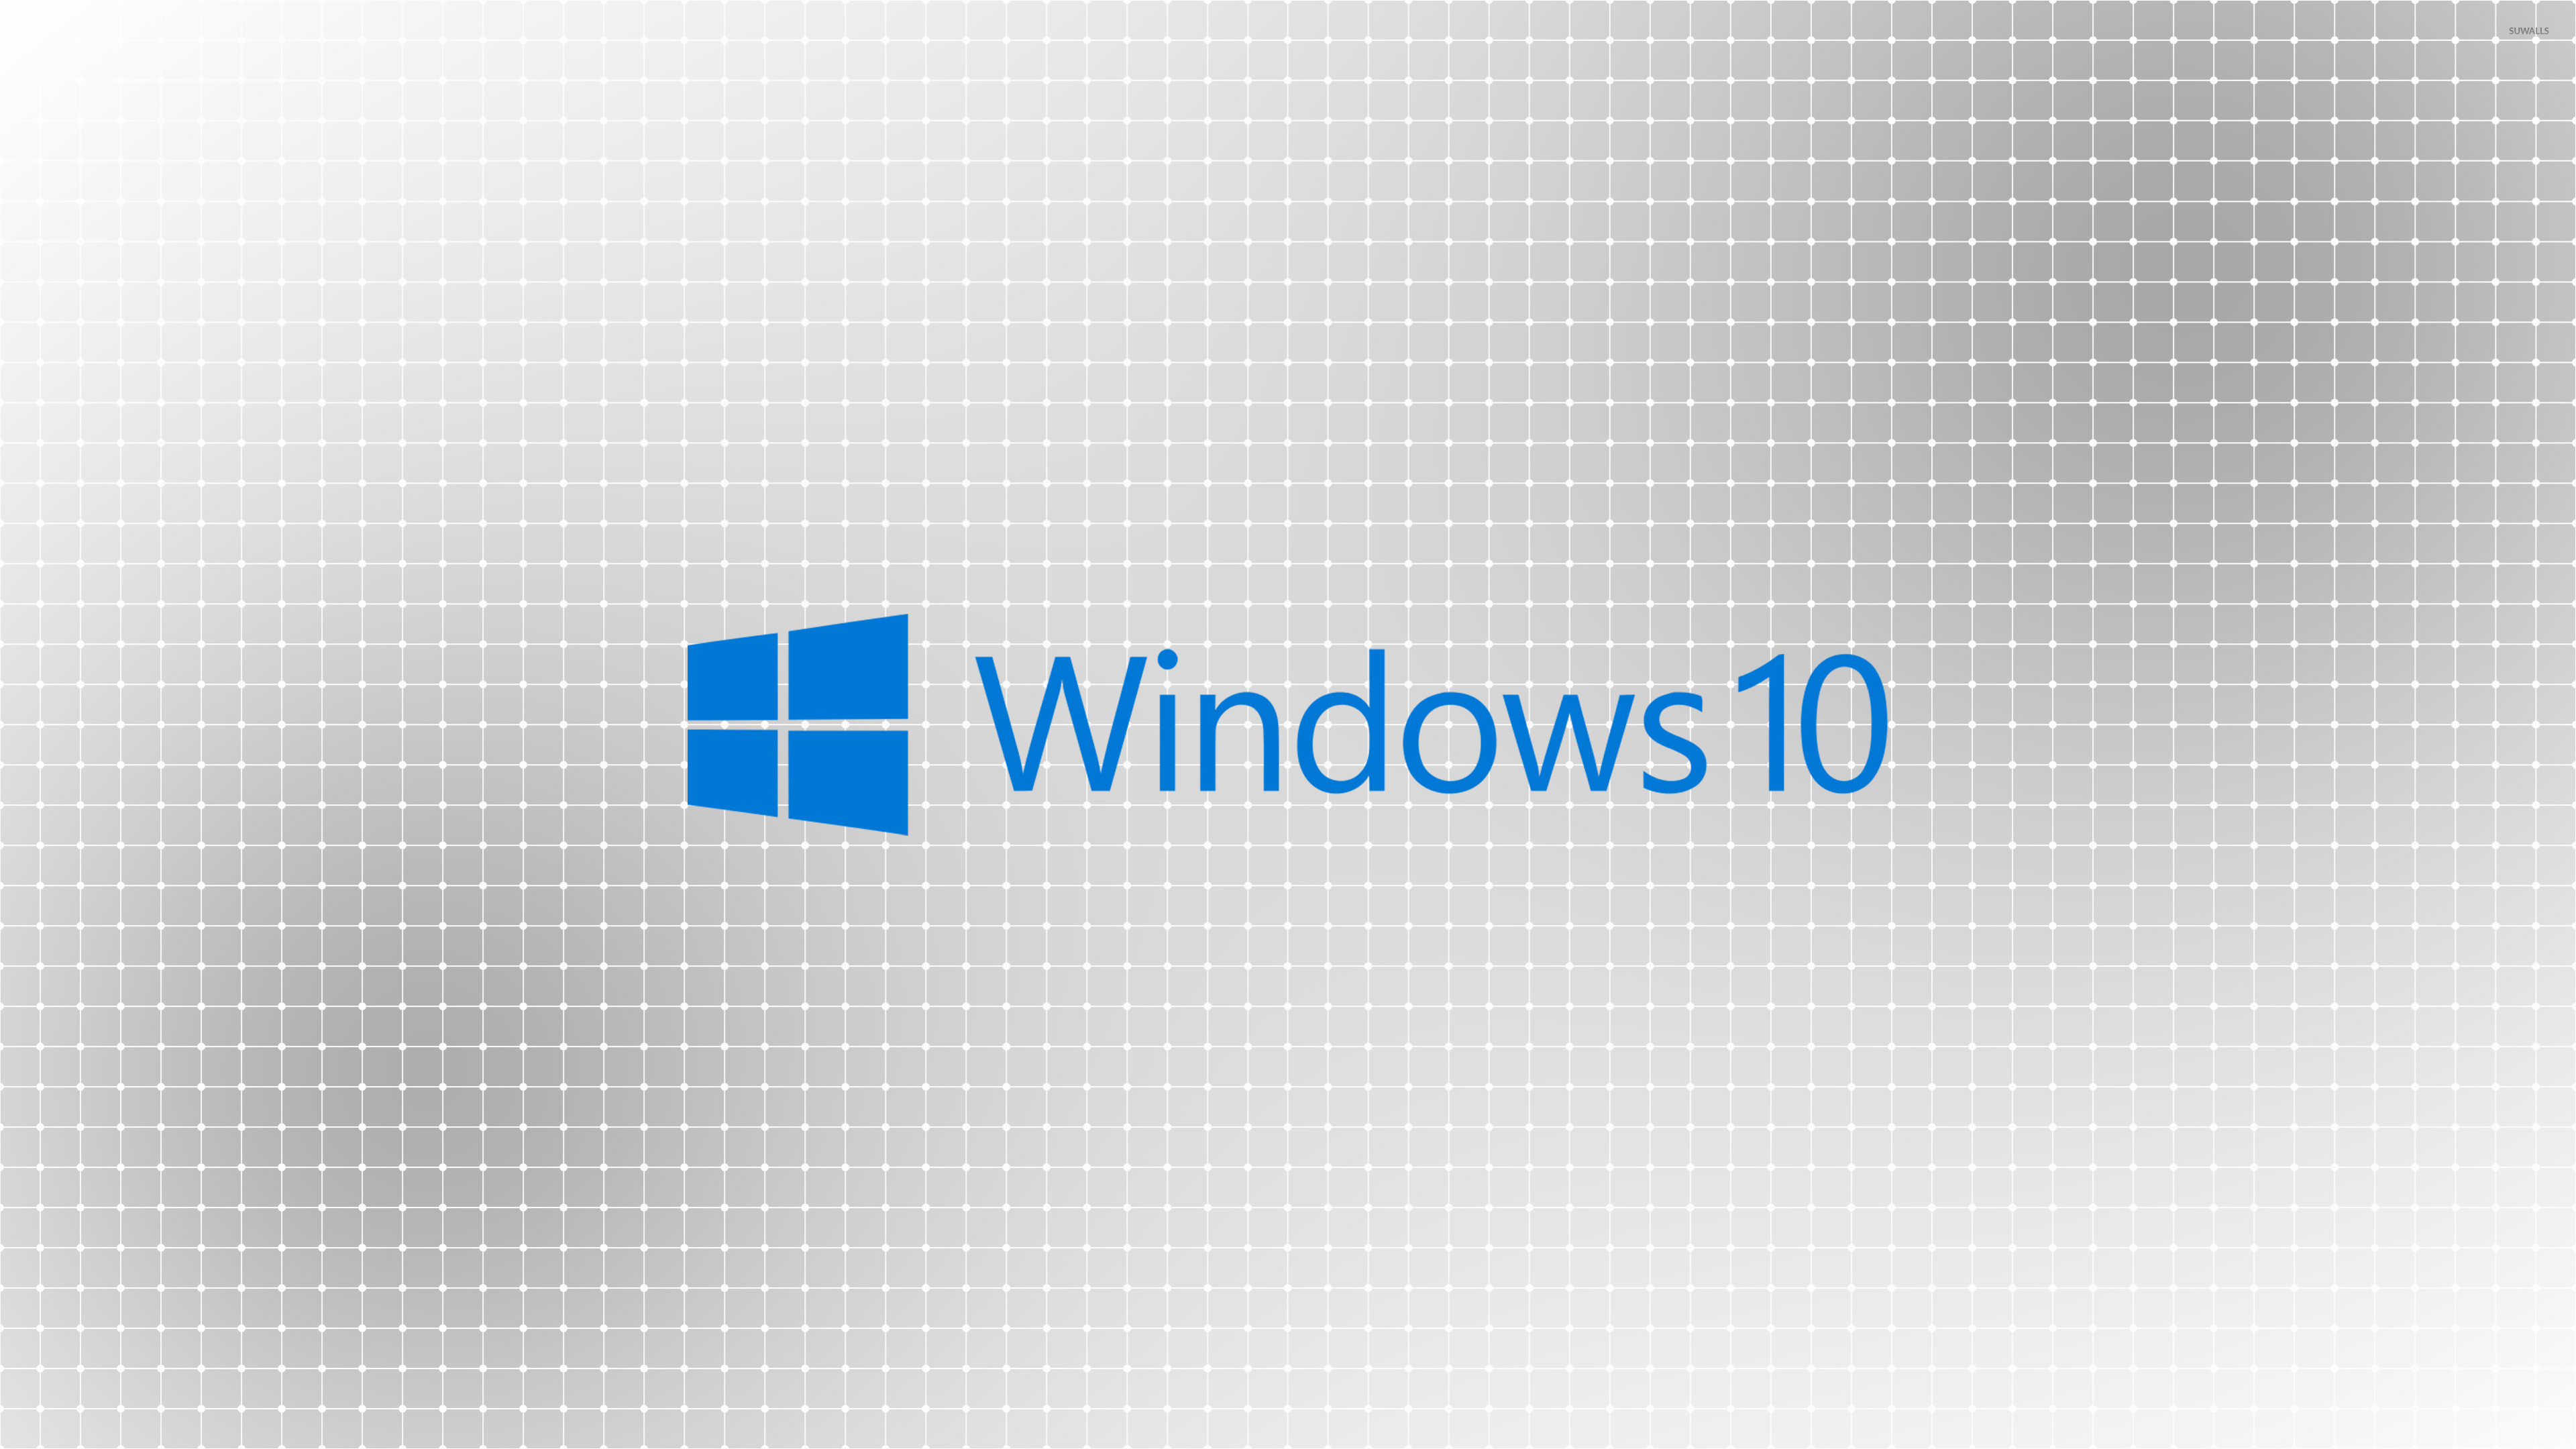 3840x2160 Windows 10 blue text logo on a light grid wallpaper